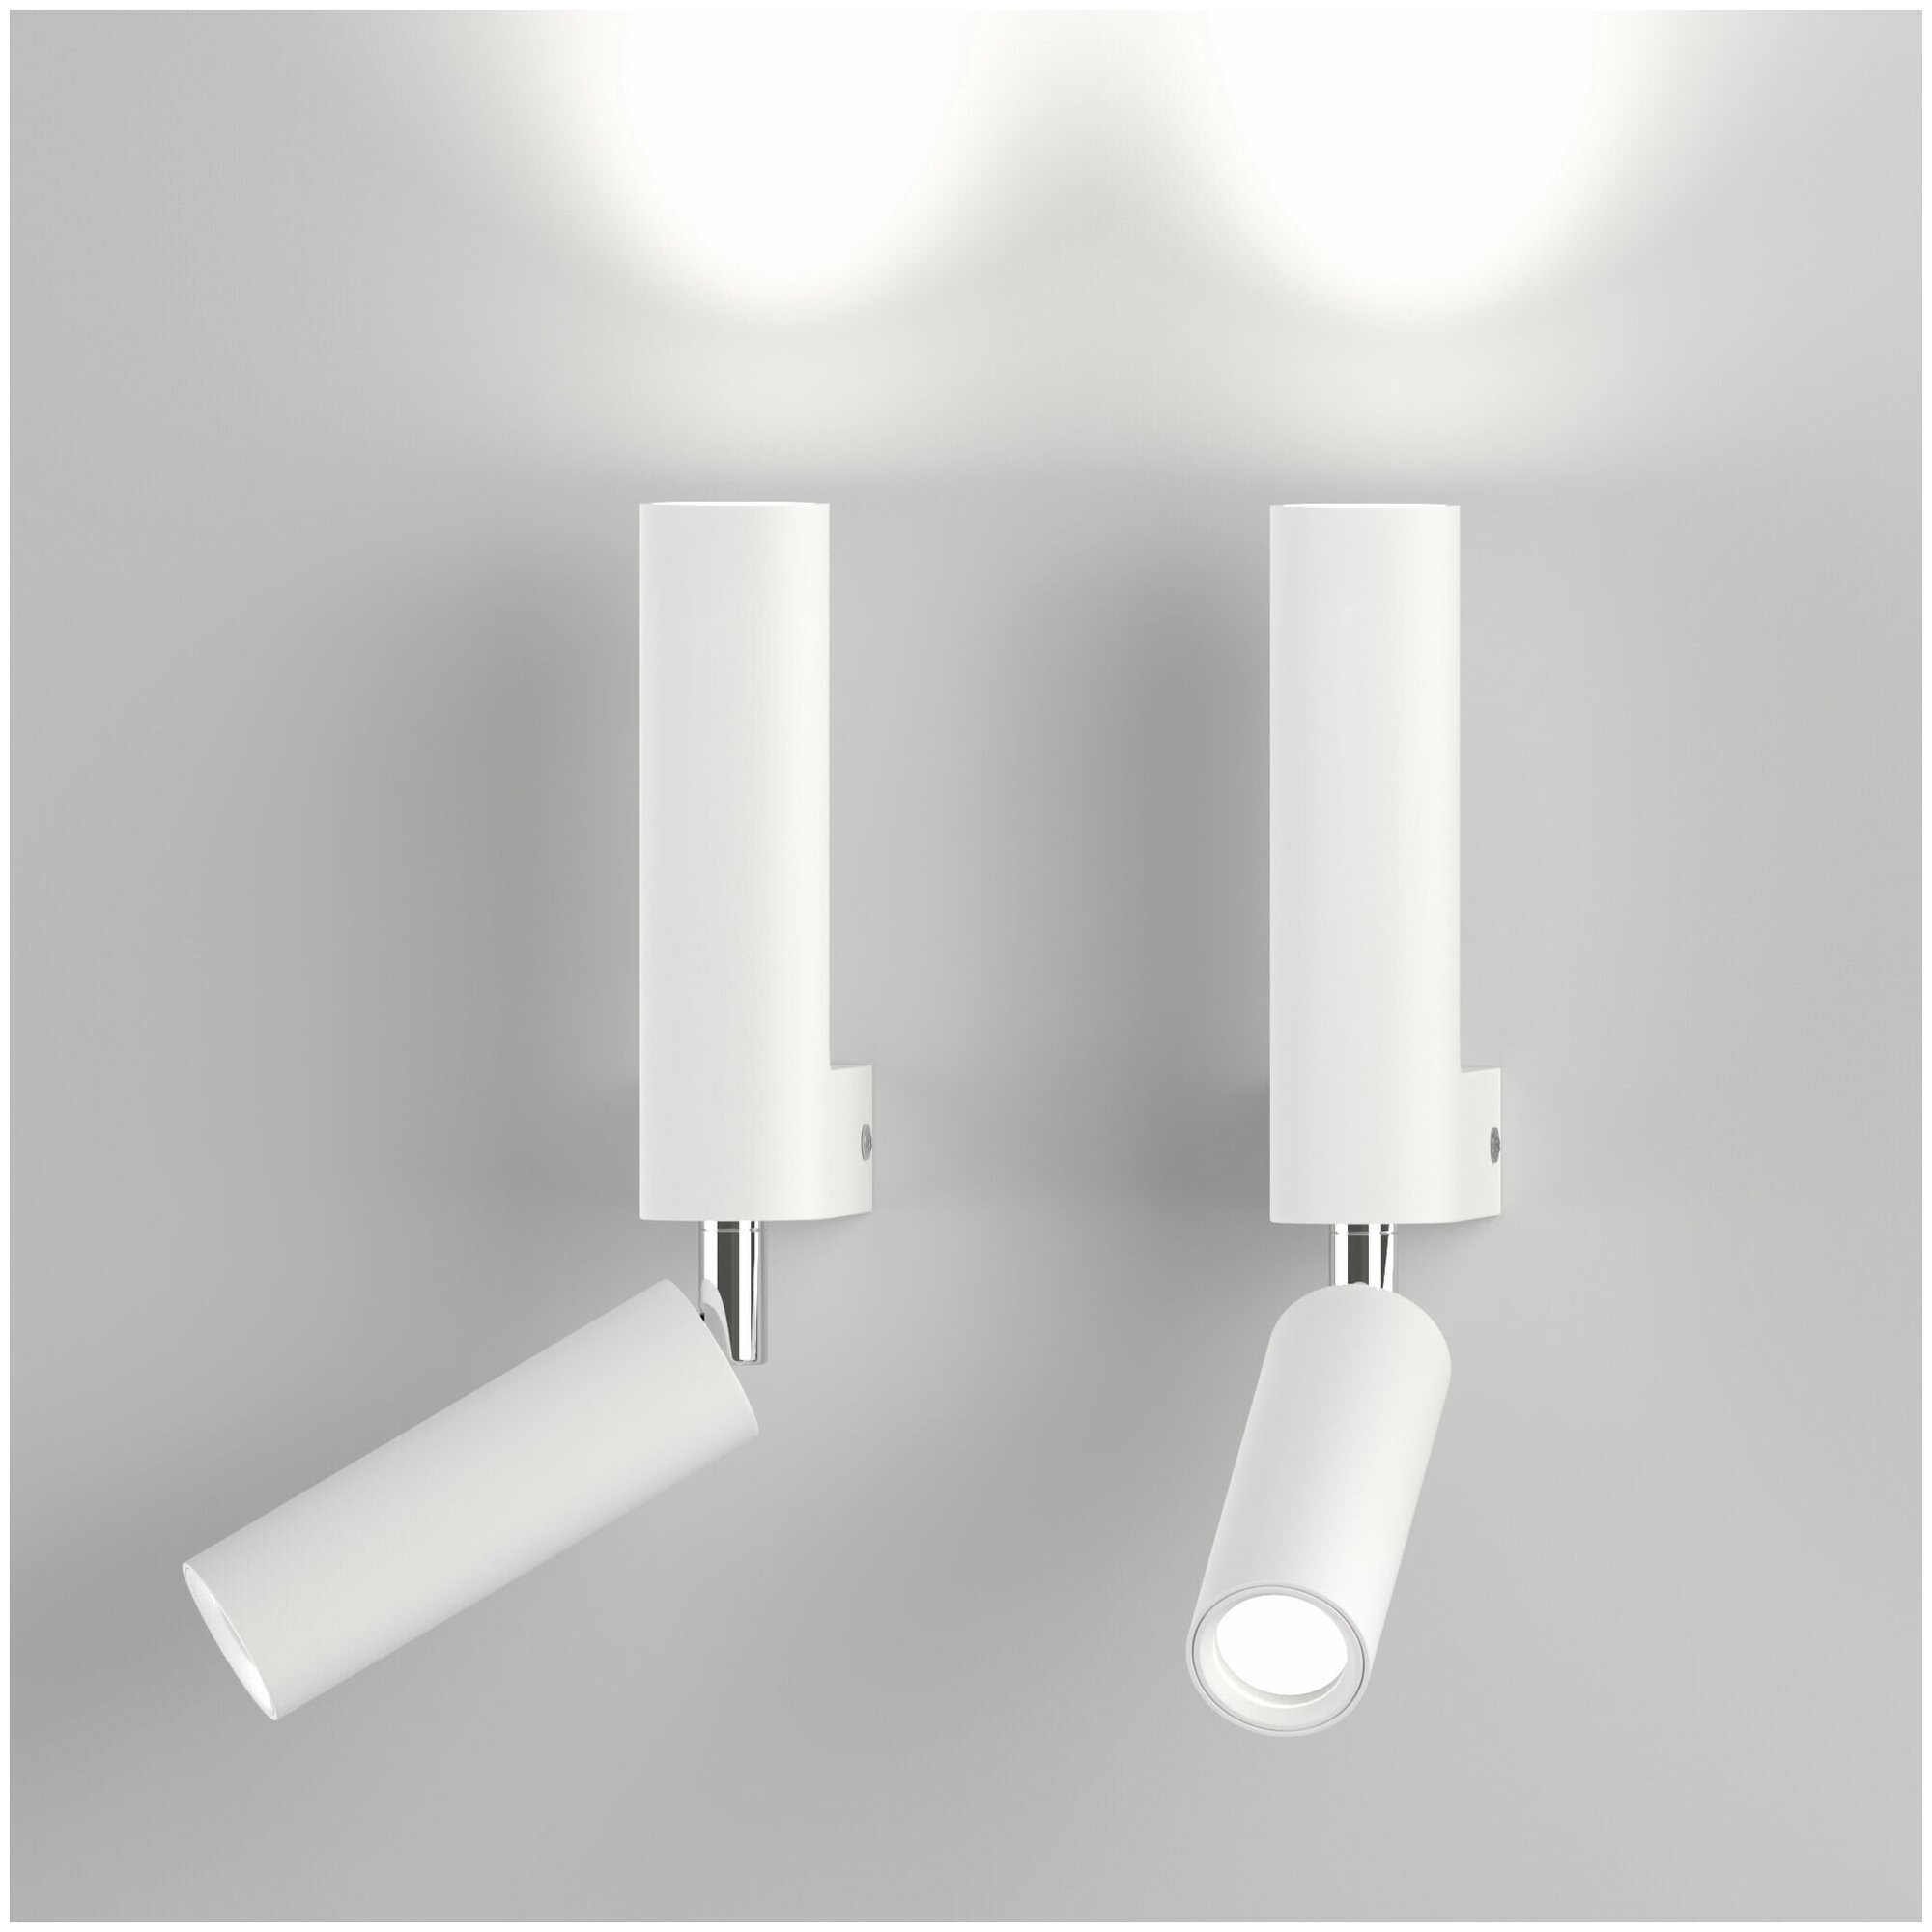 Бра / Настенный светильник Pitch Eurosvet 40020/1 LED, с поворотным плафоном, цвет белый